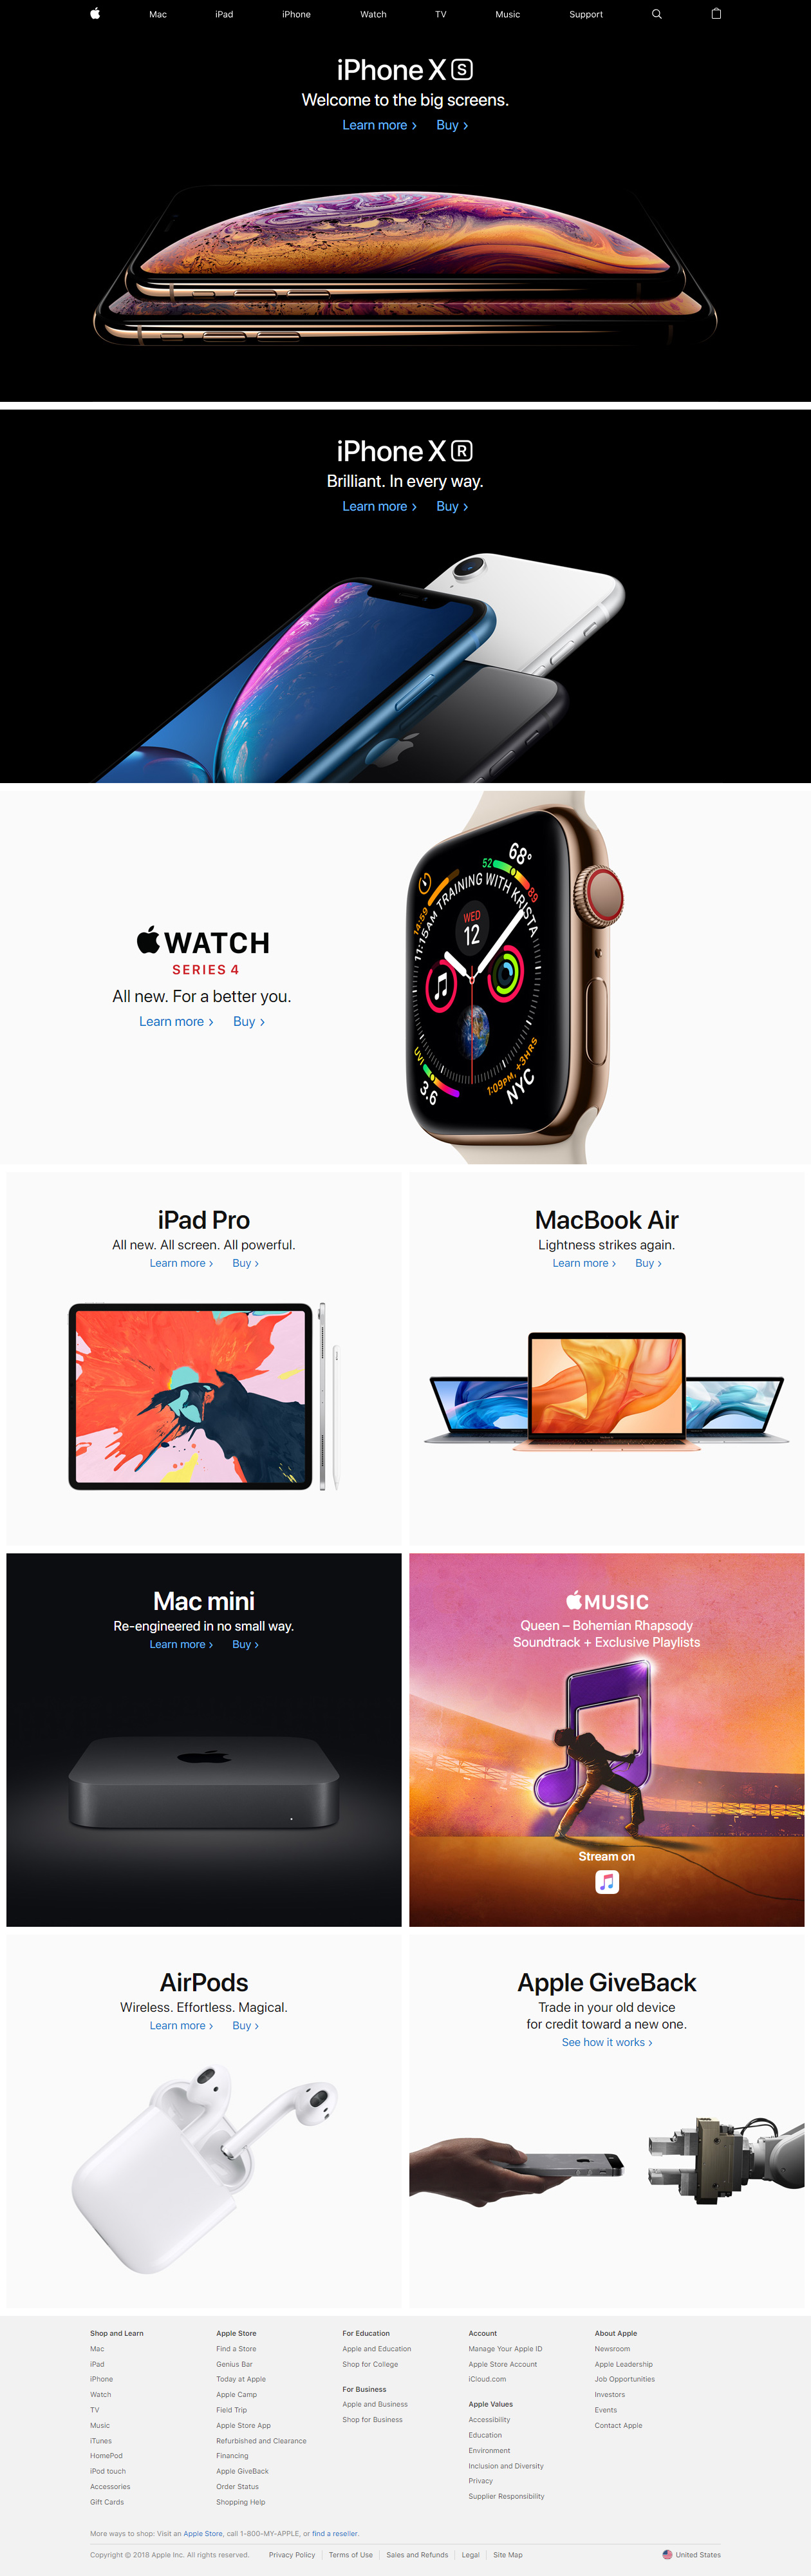 Apple website in 2018